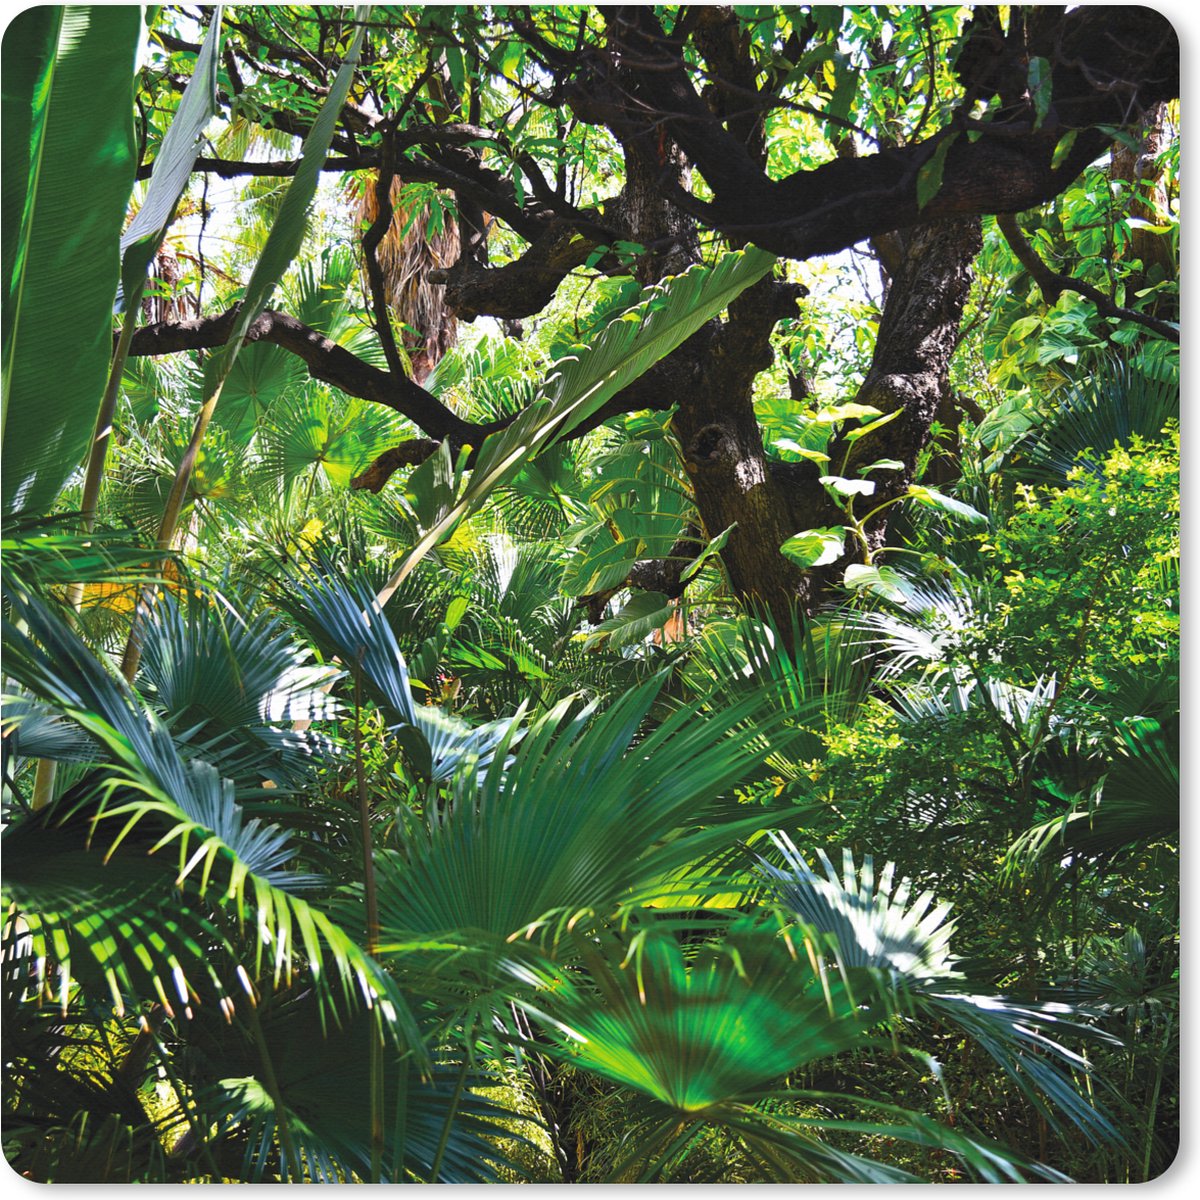 Muismat XXL - Bureau onderlegger - Bureau mat - patronen van bladeren en bomen in een regenwoud - 40x40 cm - XXL muismat